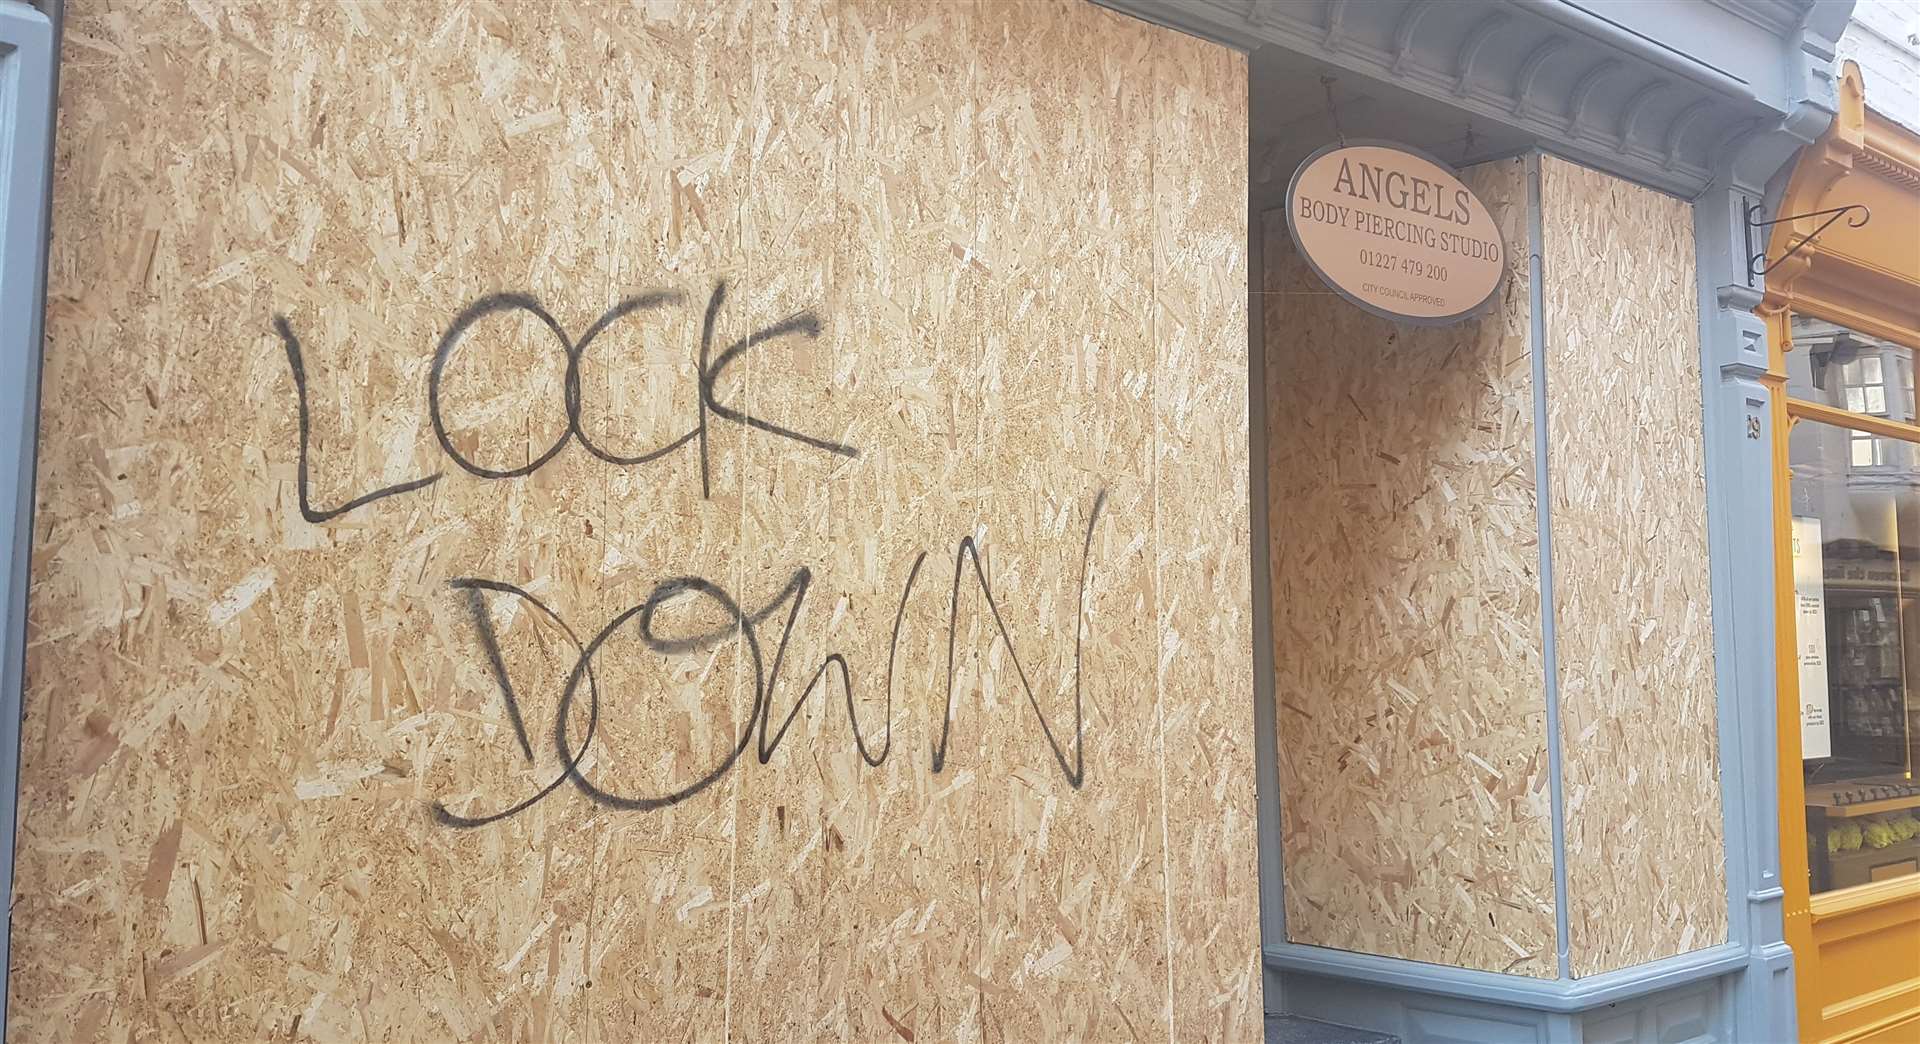 Lockdown graffiti in Canterbury city centre in March